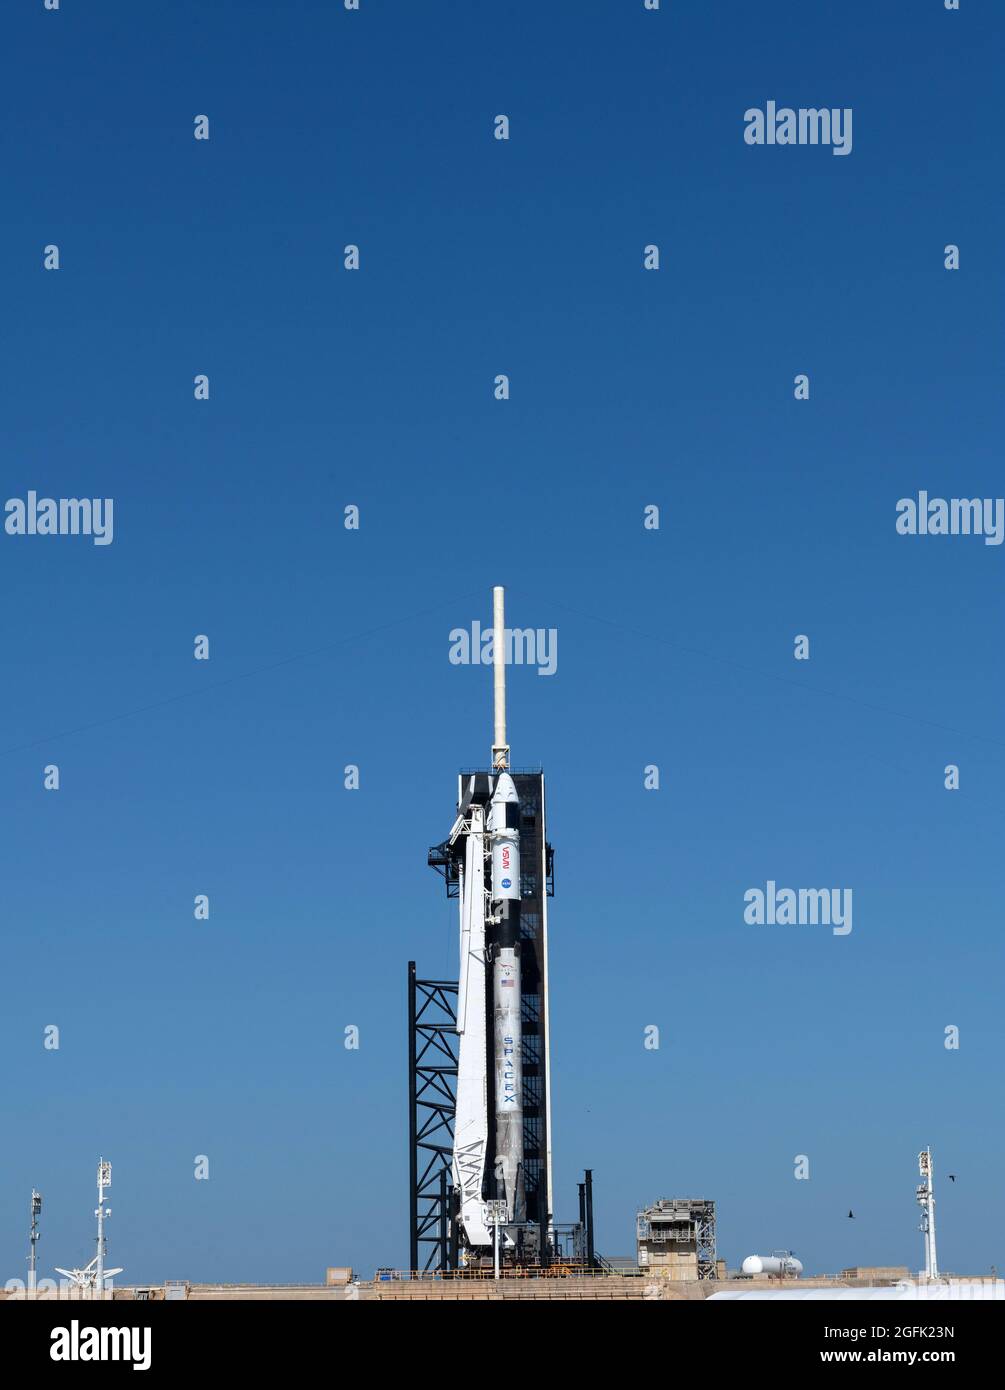 Stati Uniti, Florida, Kennedy Space Center, 2021/04/22: Un Falcon 9 Crew Dragon pronto per il lancio di Crew 2 sul pad di lancio 39A con l'astronauta ESA A. Foto Stock